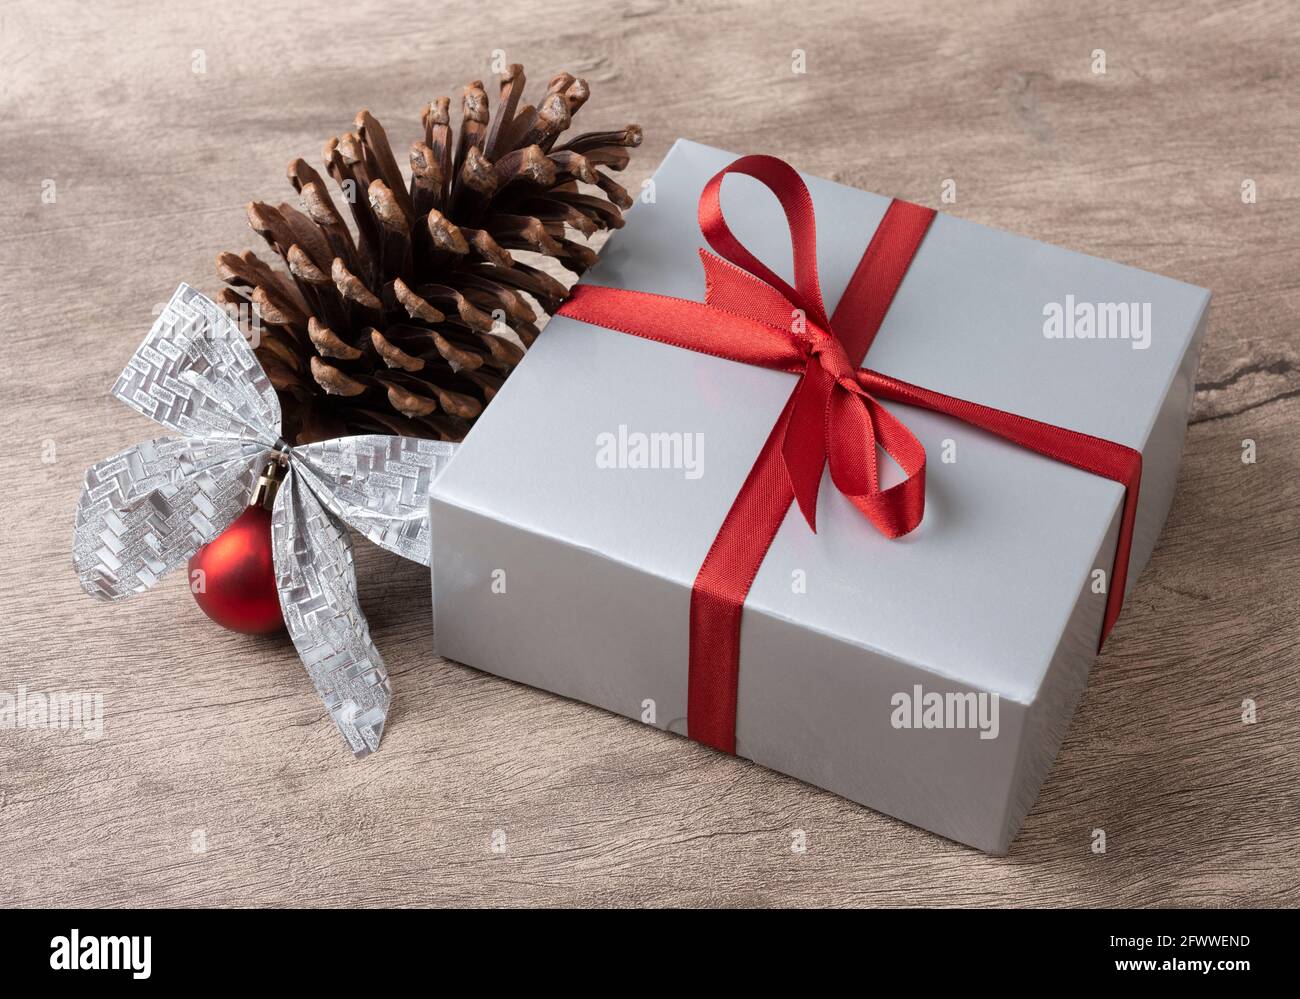 Geschenkbox, Pinecone, weihnachtskugel und Bogen über Holztisch  Stockfotografie - Alamy